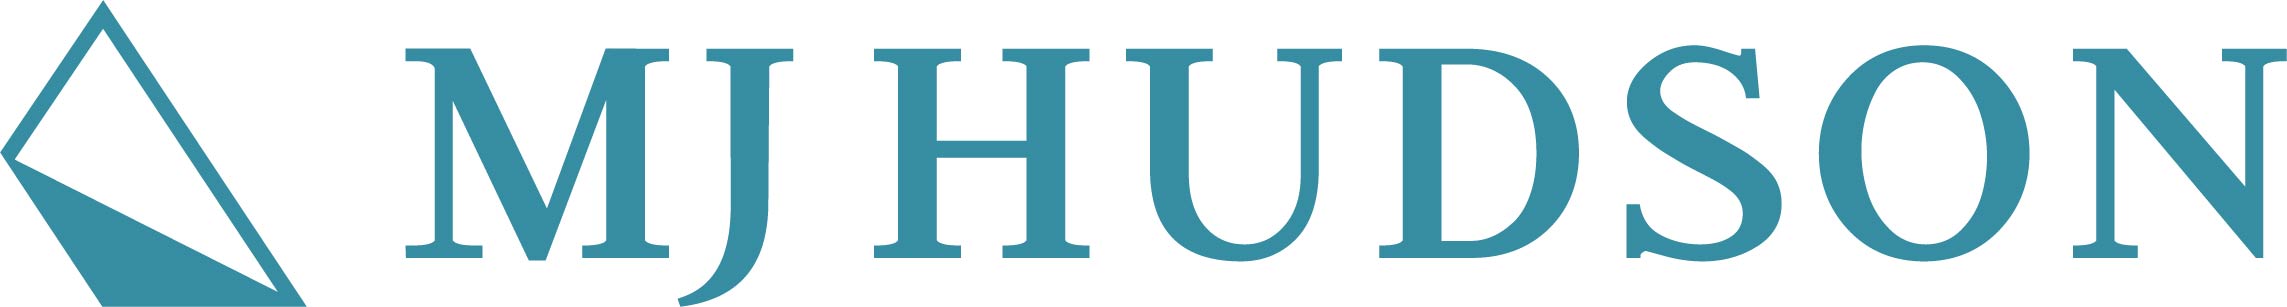 mj_hudson_logo.jpg